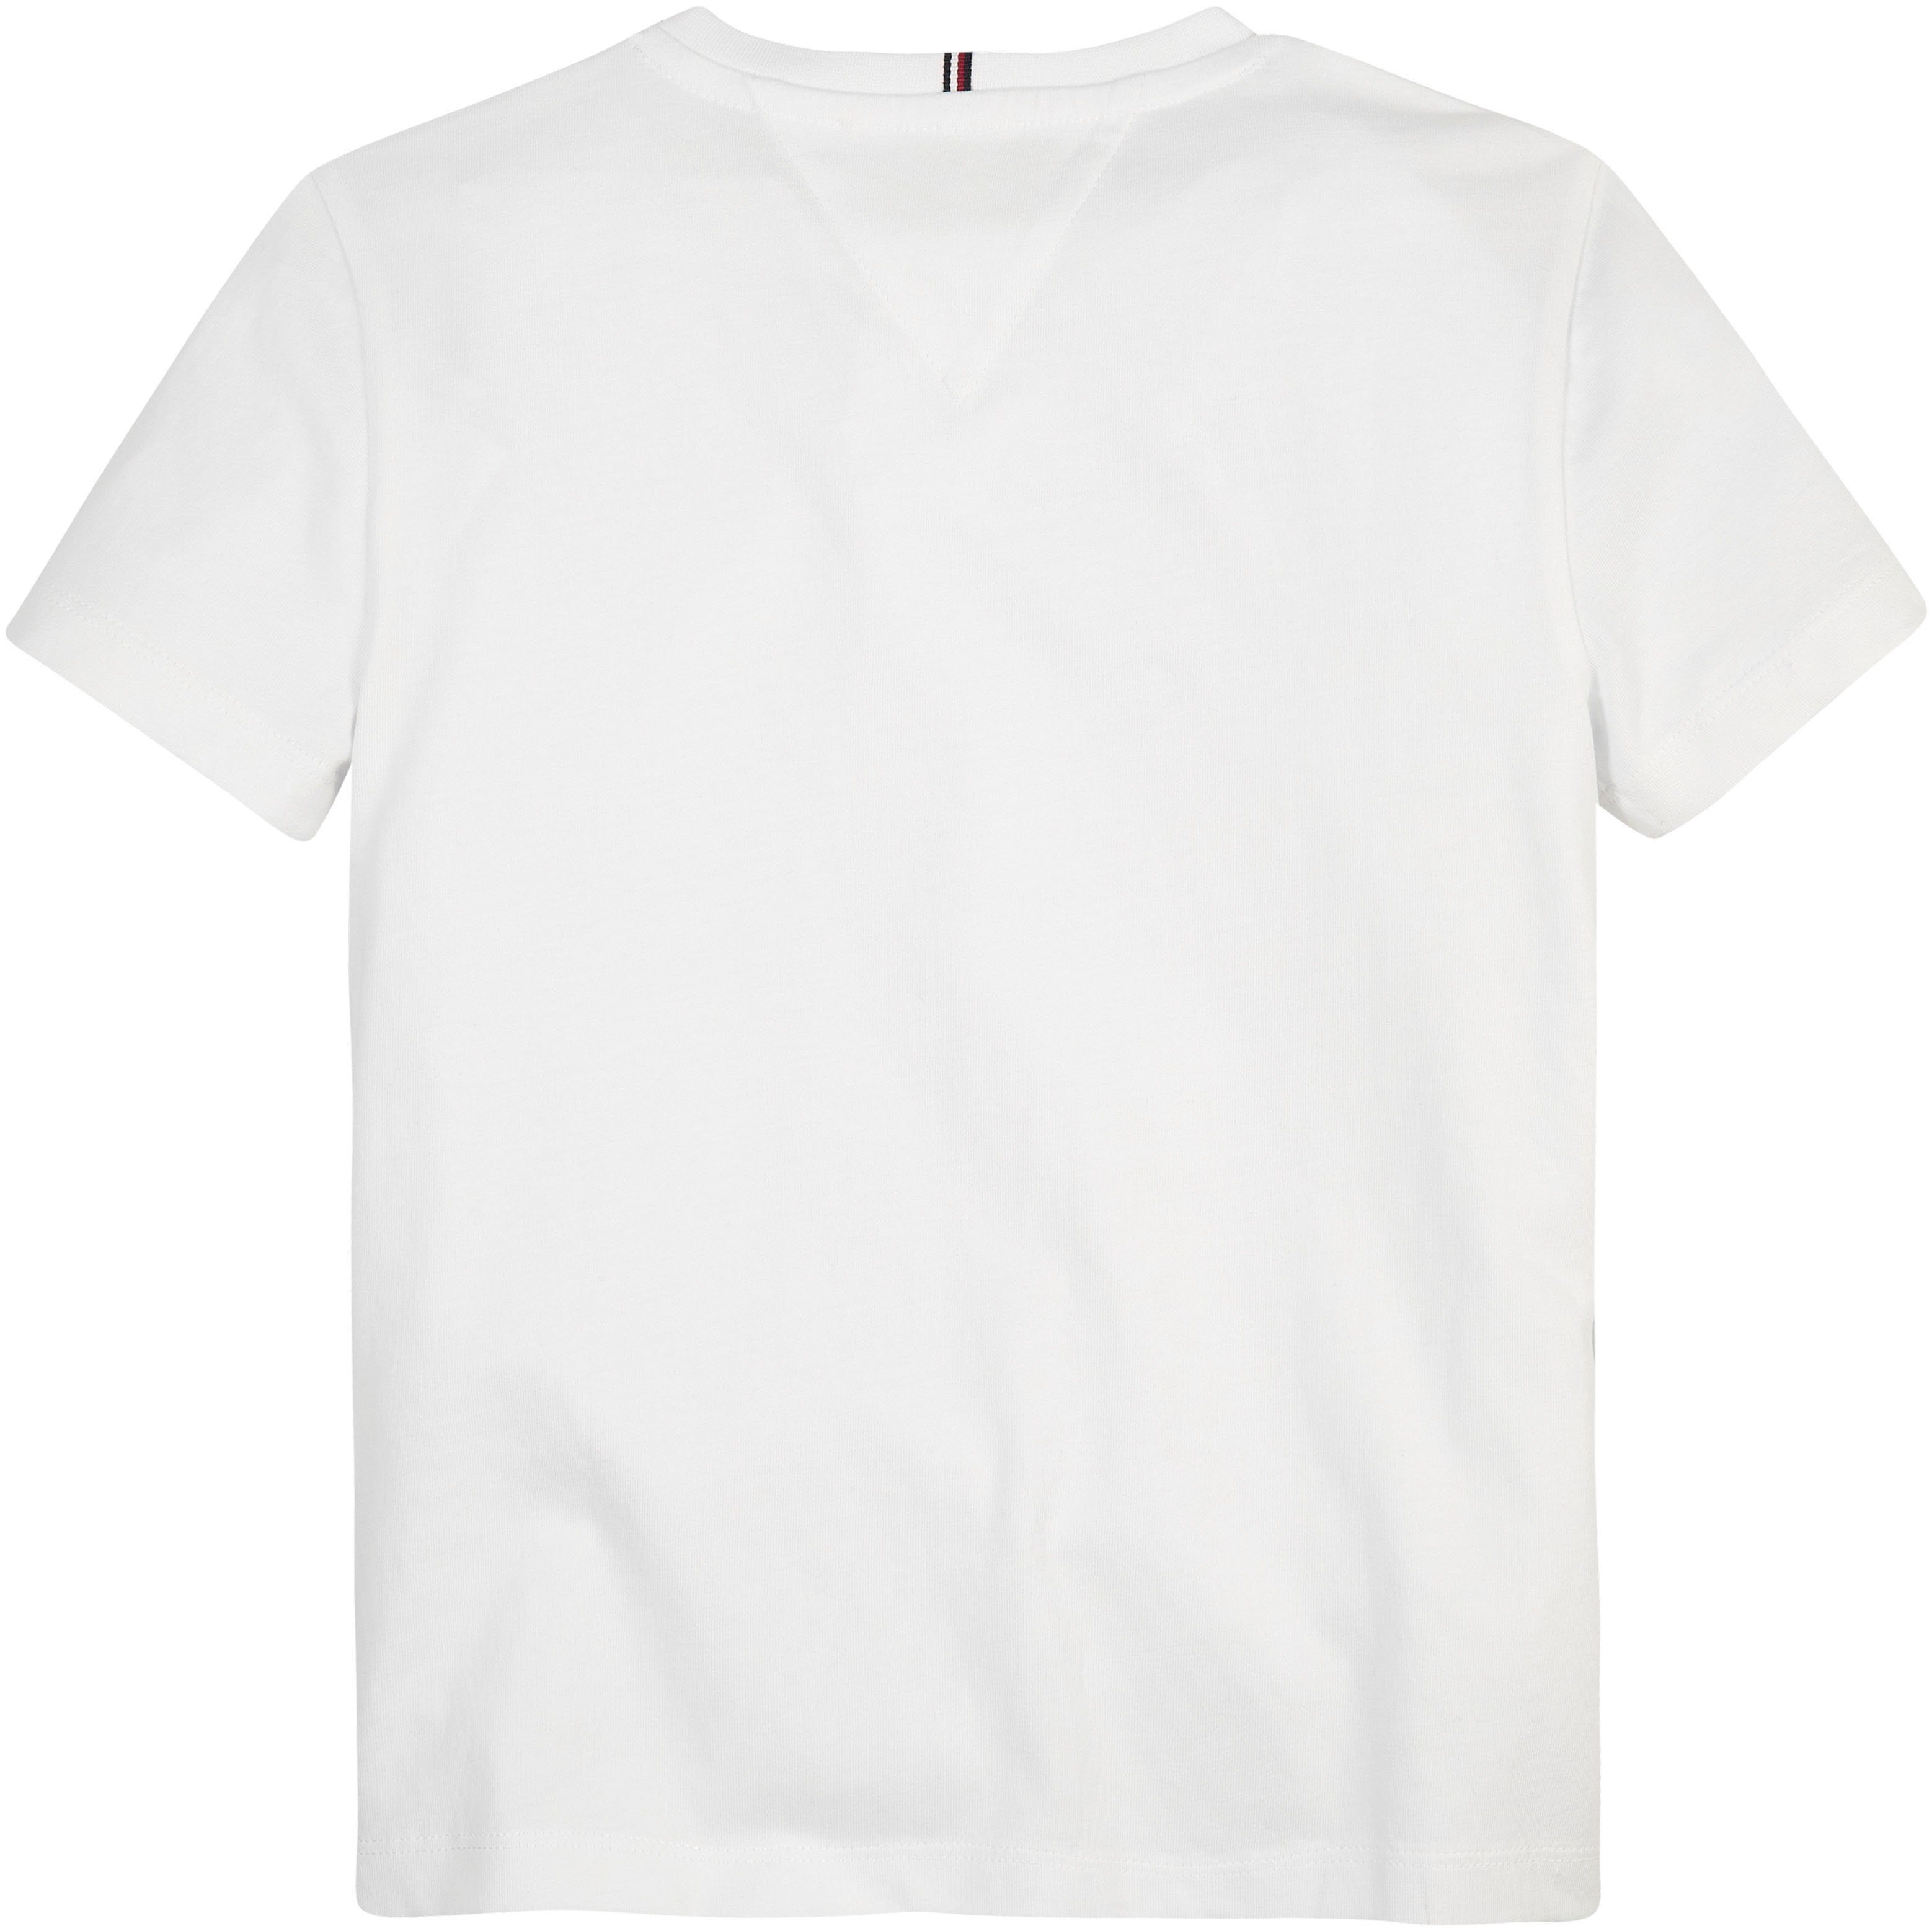 MONOTYPE Hilfiger-Logoschriftzug Hilfiger Brust Tommy TEE White T-Shirt mit auf modischem S/S der